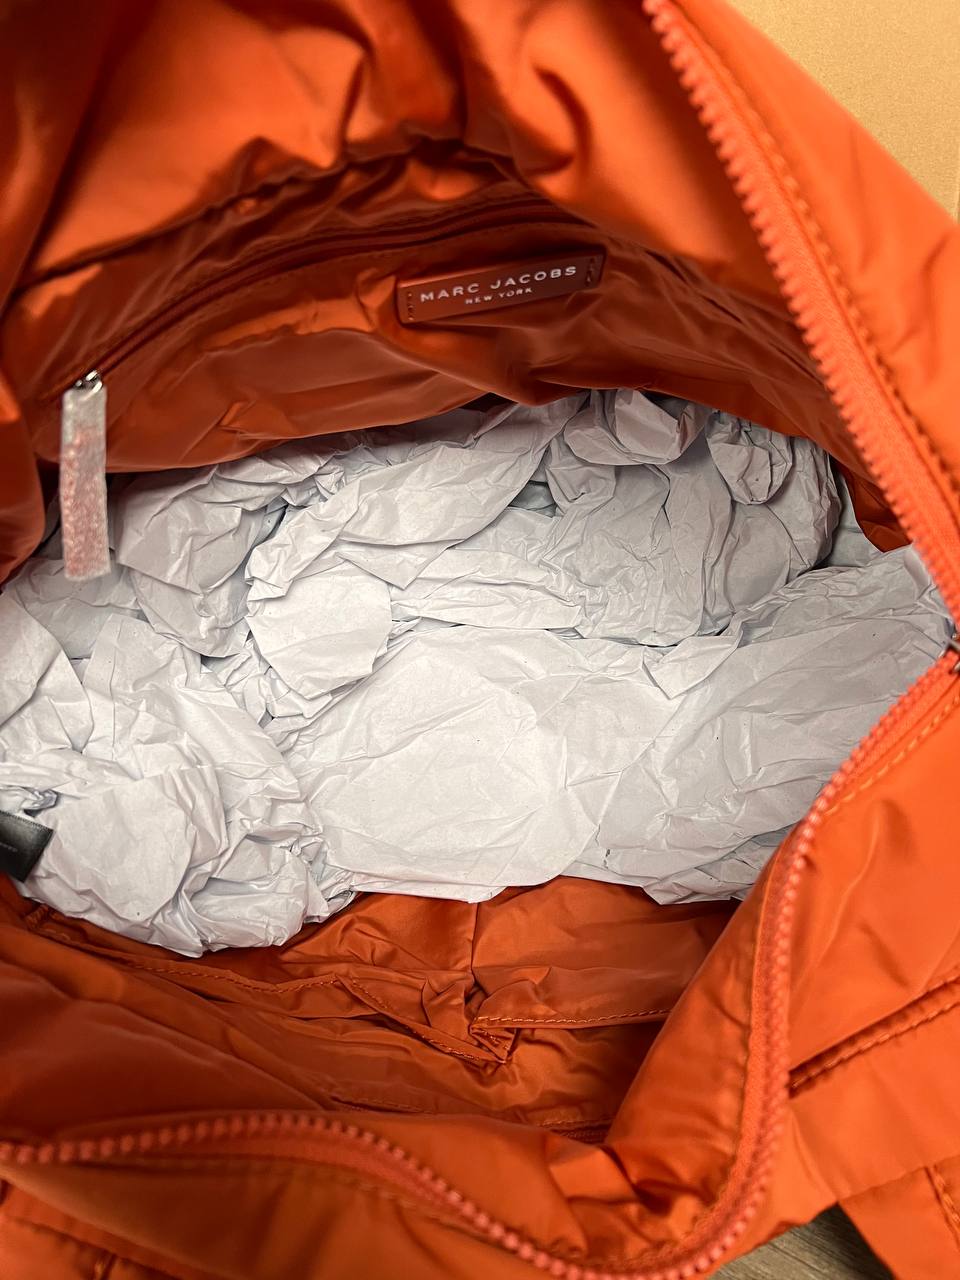 Marc Jacobs Quilted Nylon Medium Tote Bag in Mecca Orange (M0016680-806)